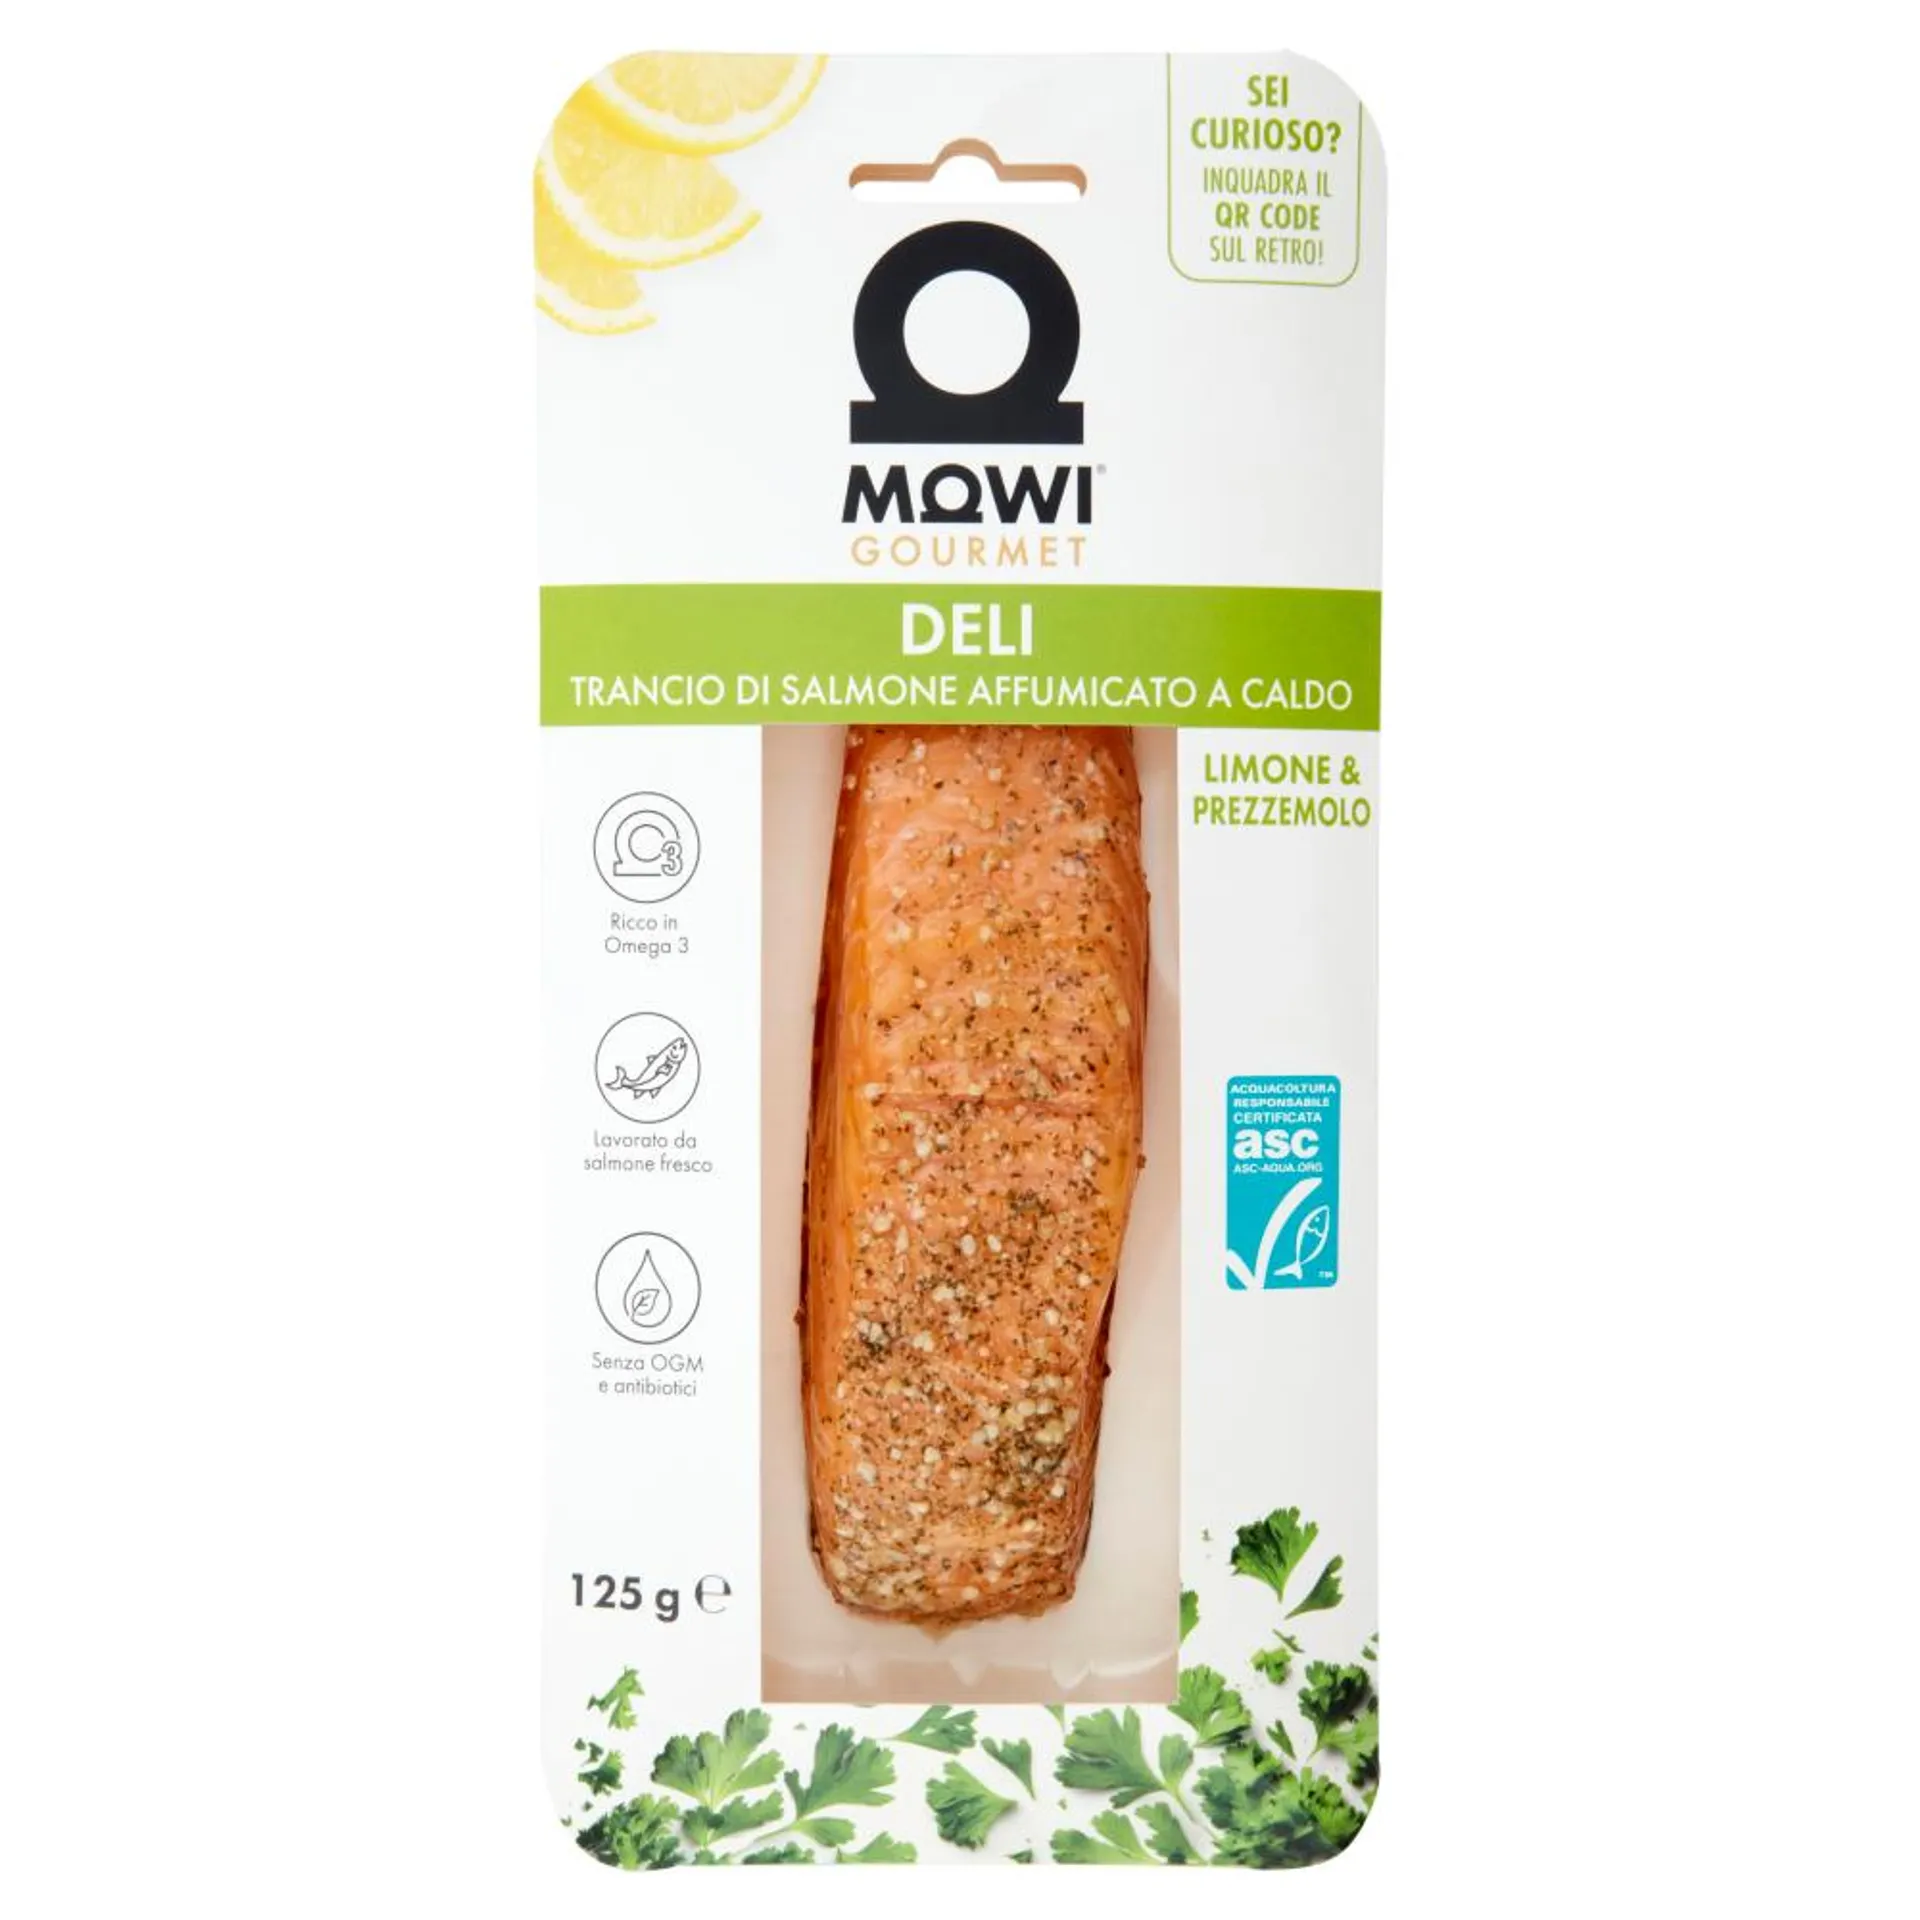 Mowi Gourmet Deli Trancio di Salmone Affumicato a Caldo Limone & Prezzemolo 125 g